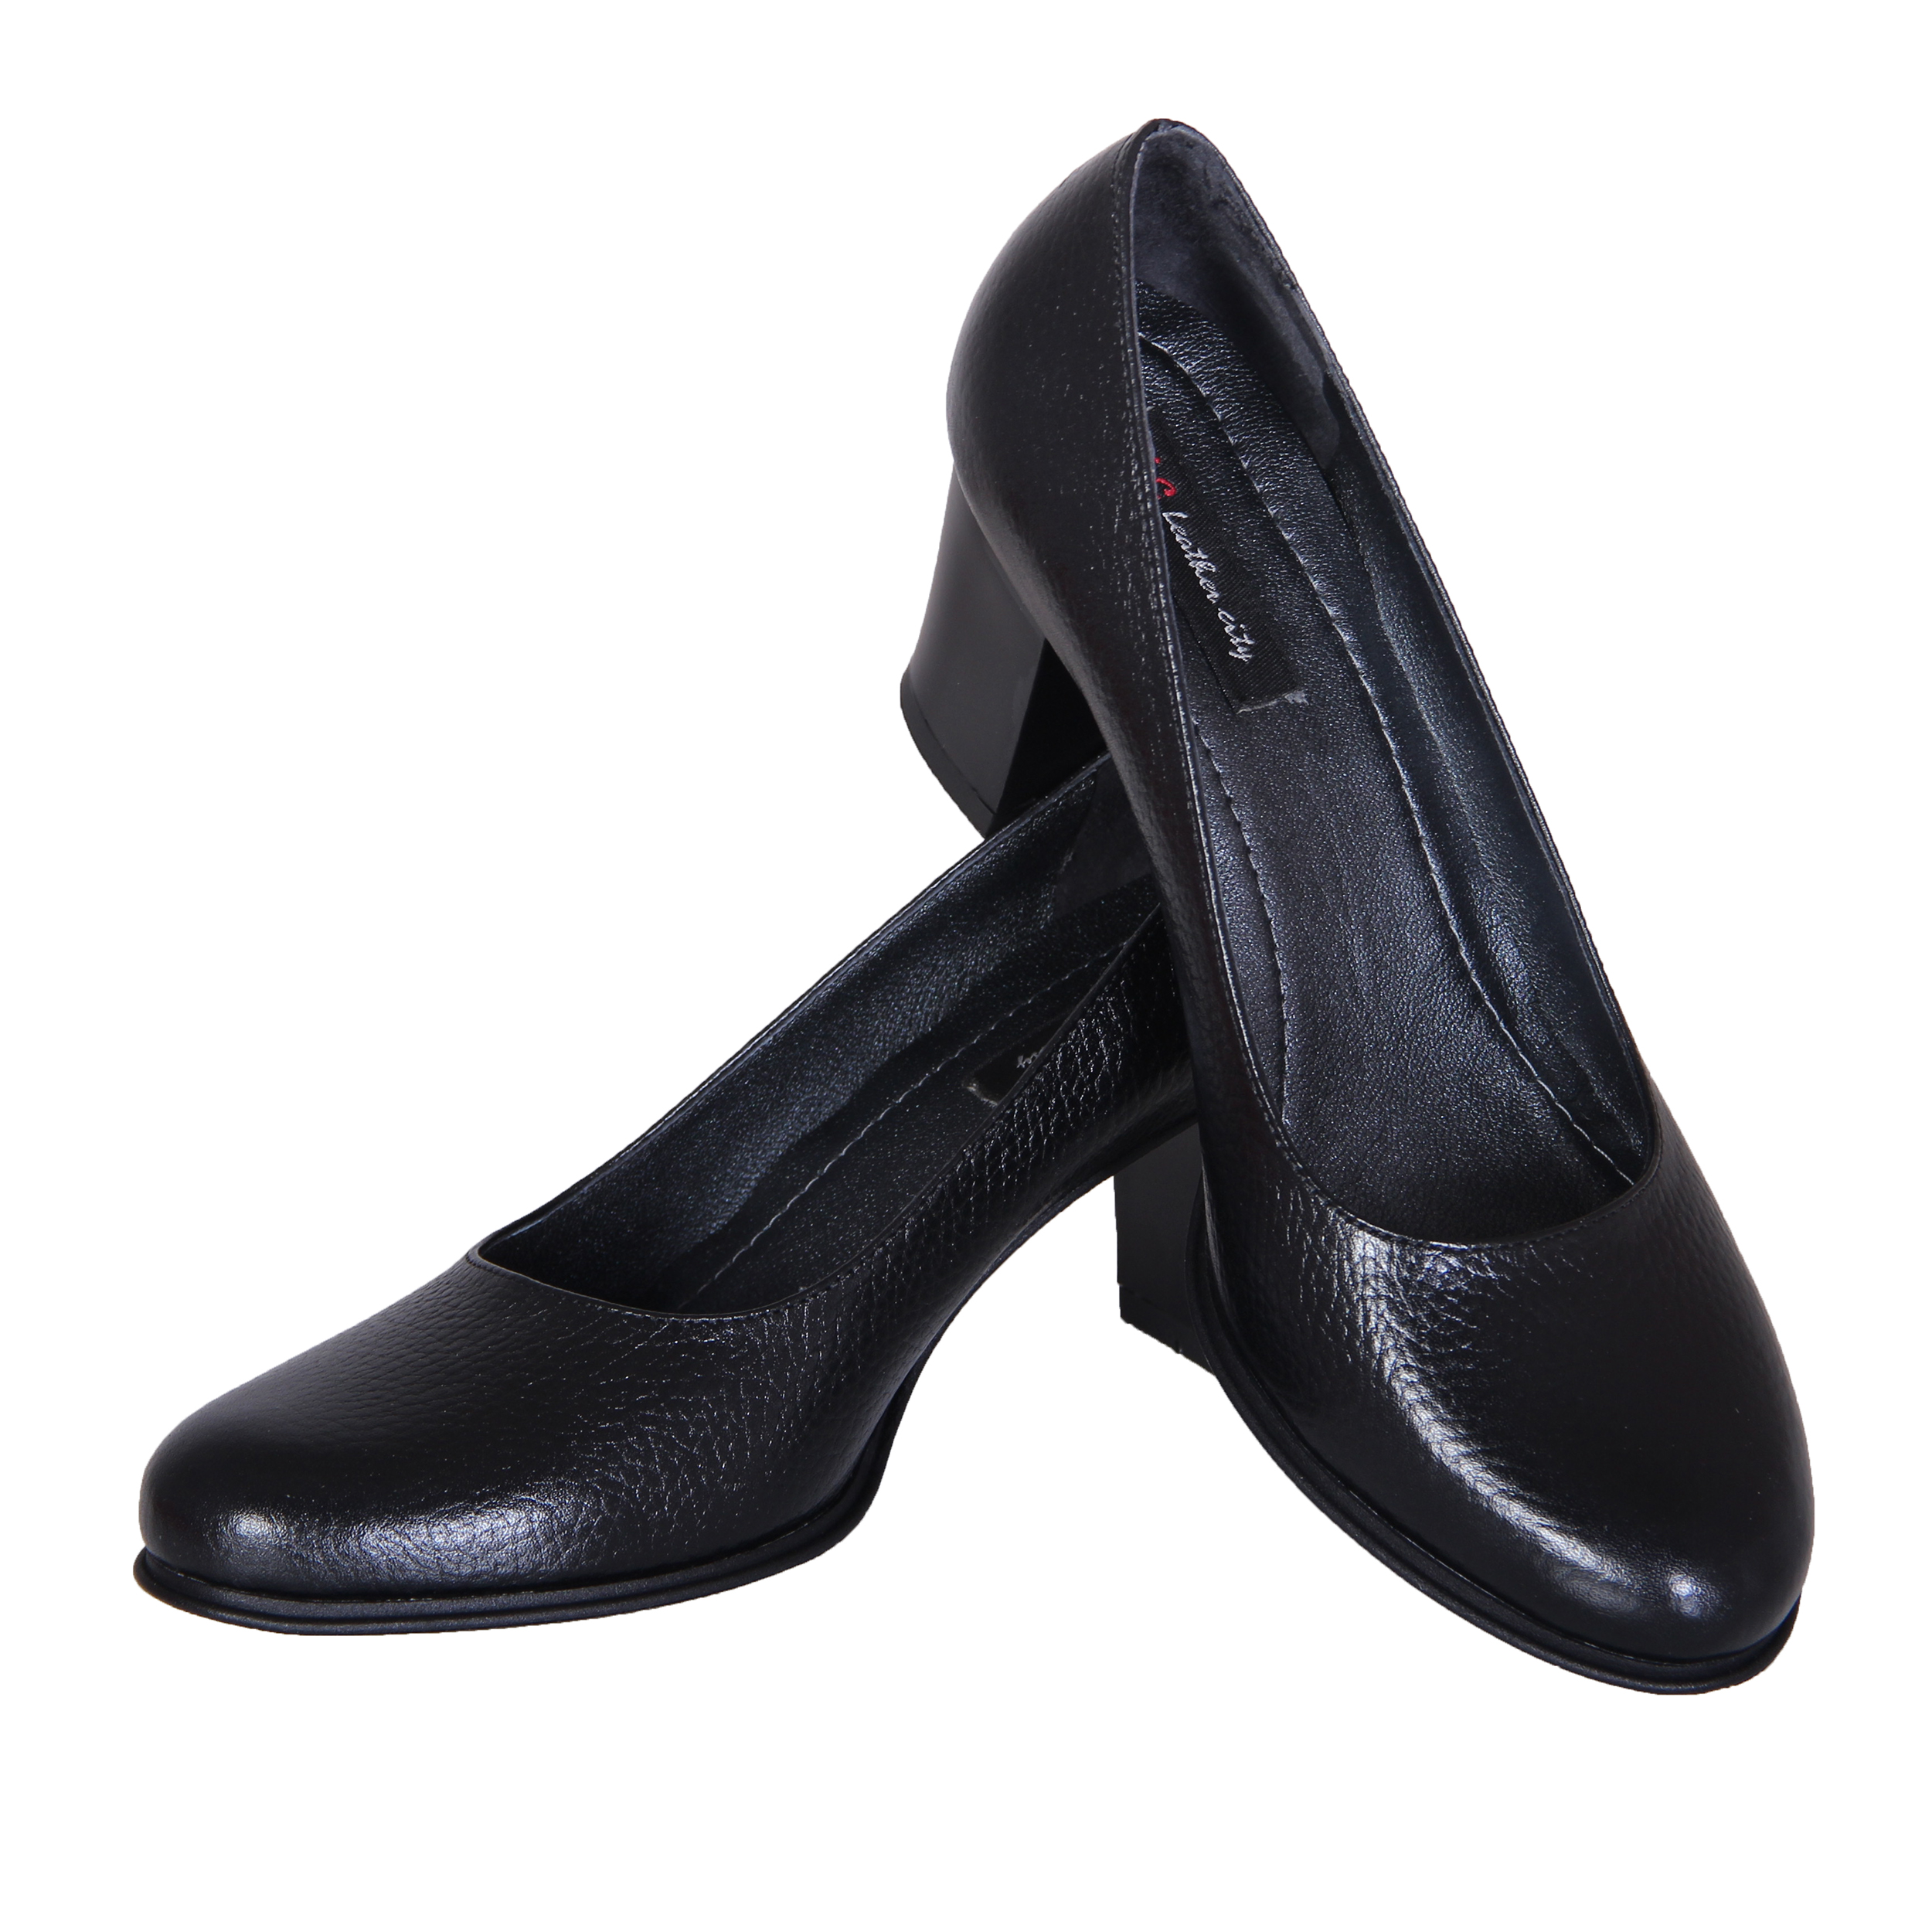 SHAHRECHARM leather women's shoes , PC474-1 Model